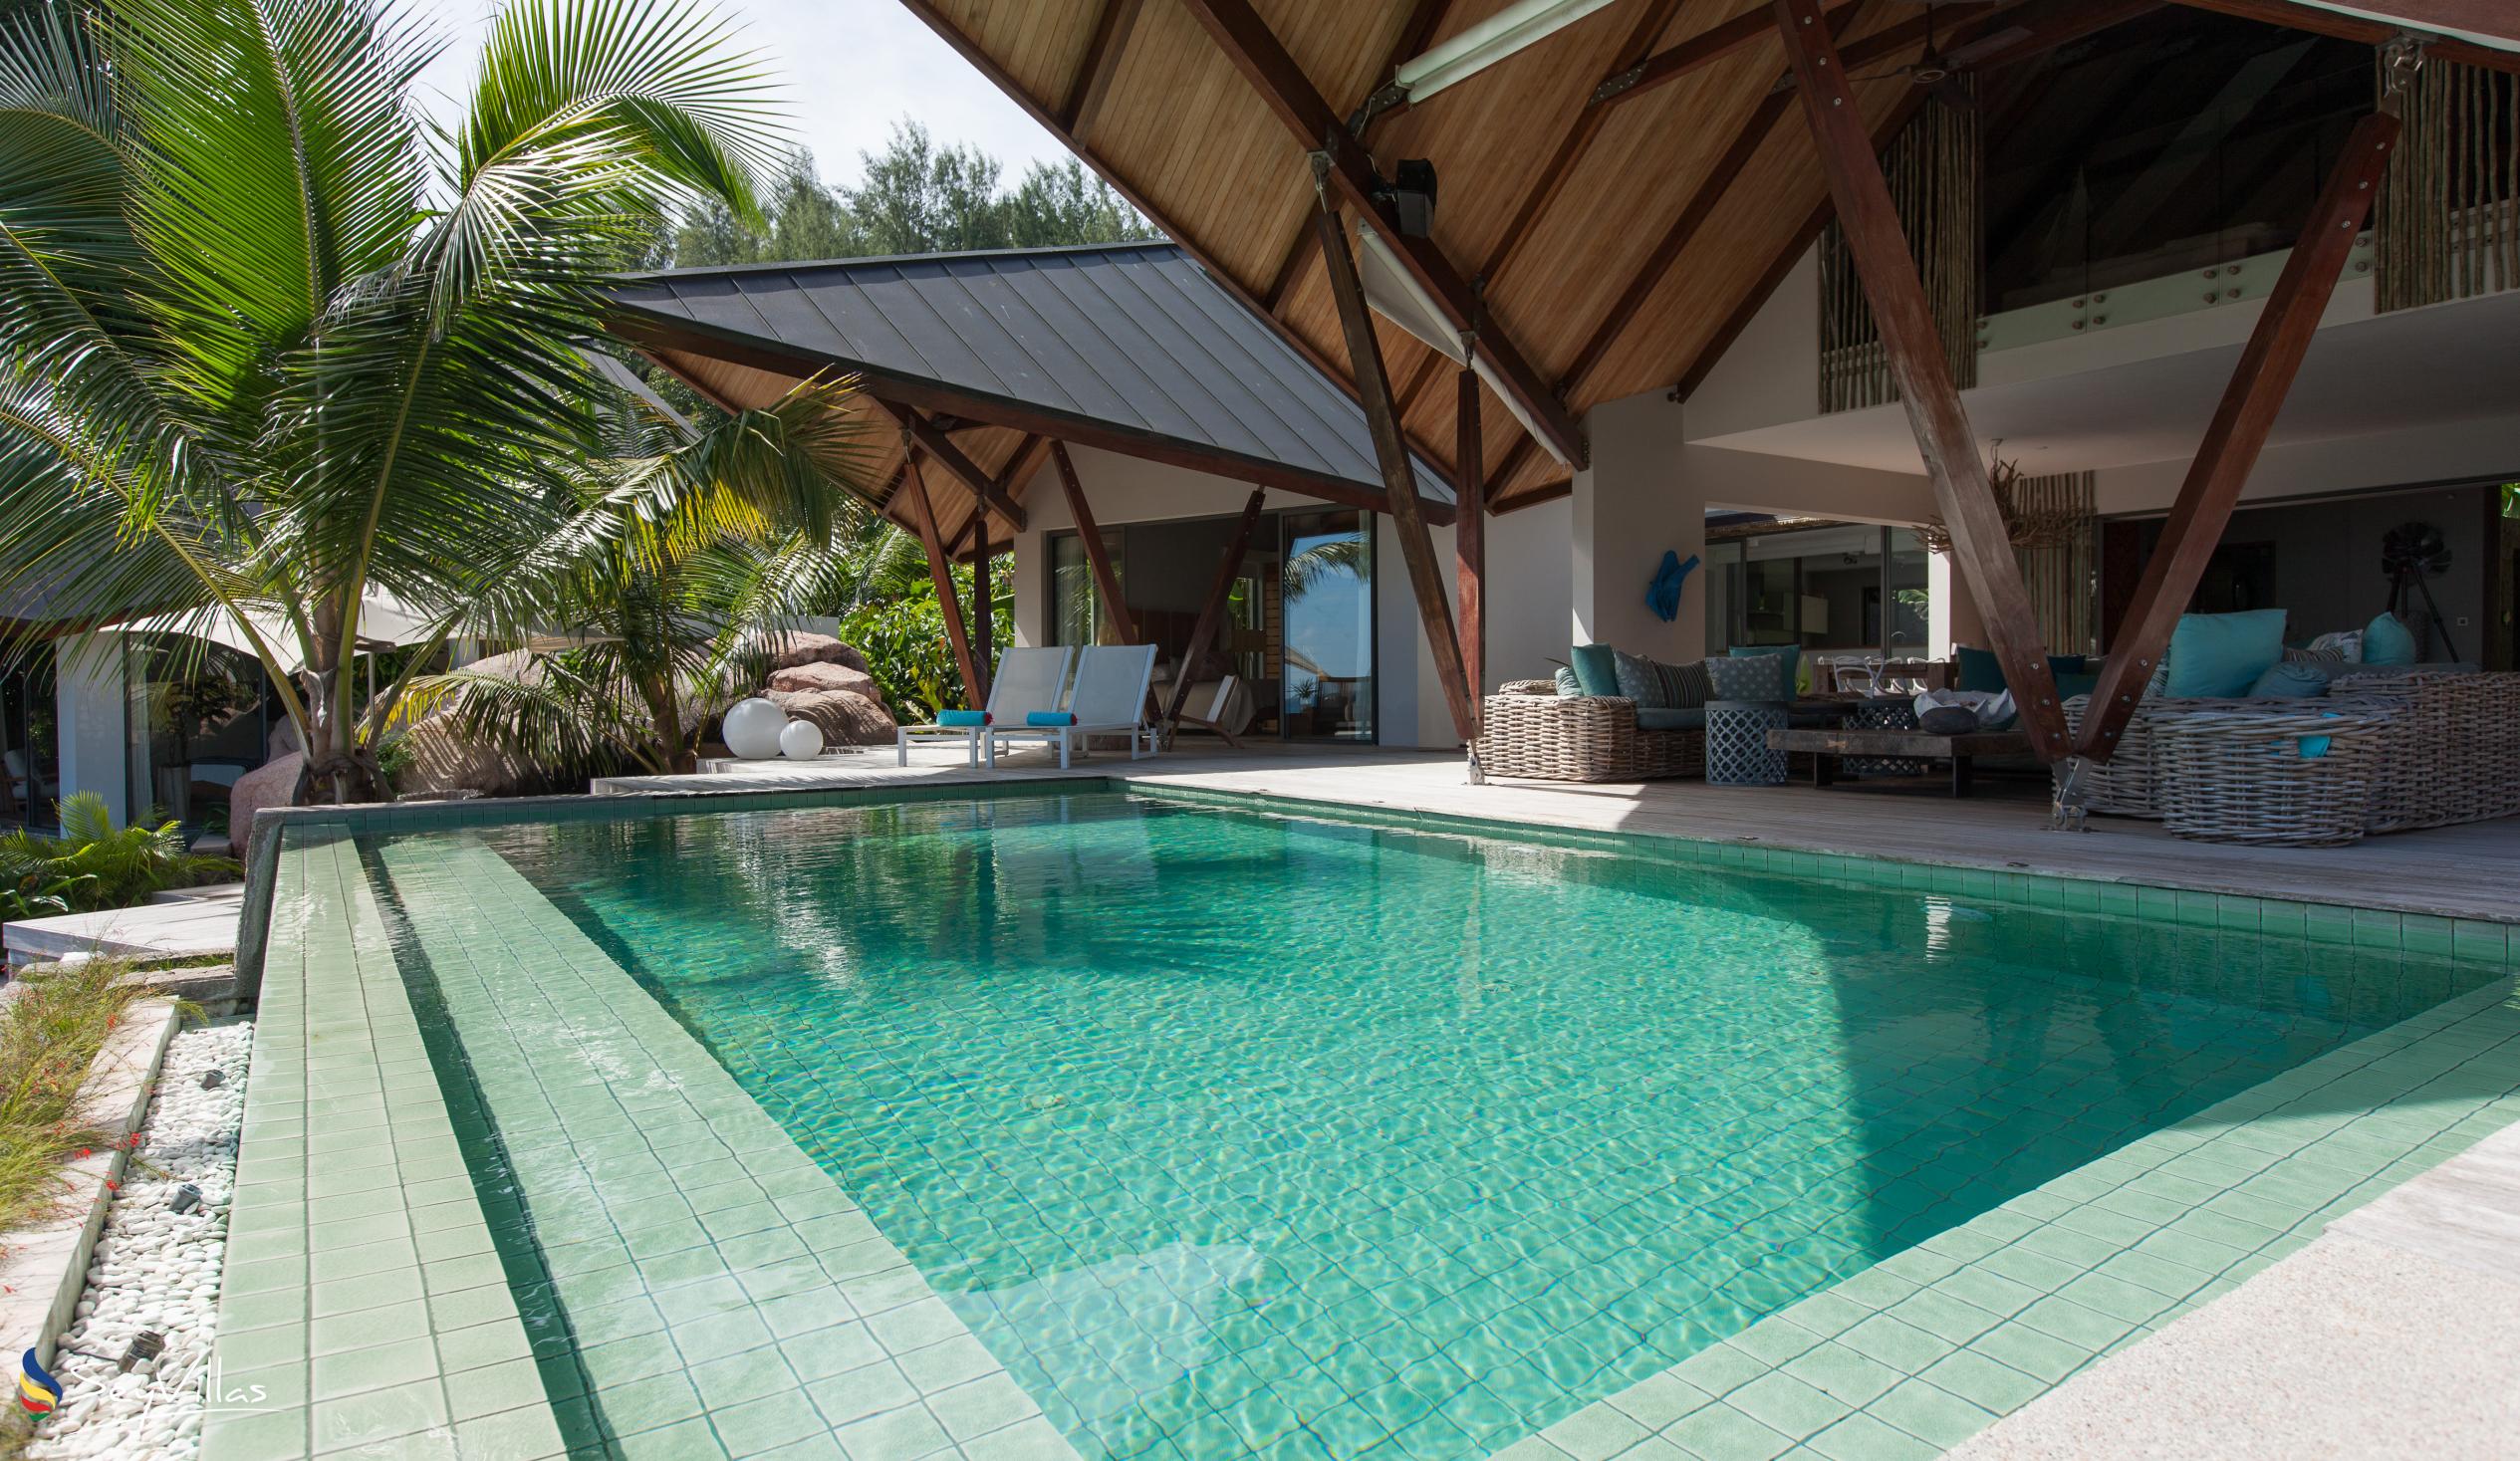 Foto 9: Villa Deckenia - Aussenbereich - Praslin (Seychellen)